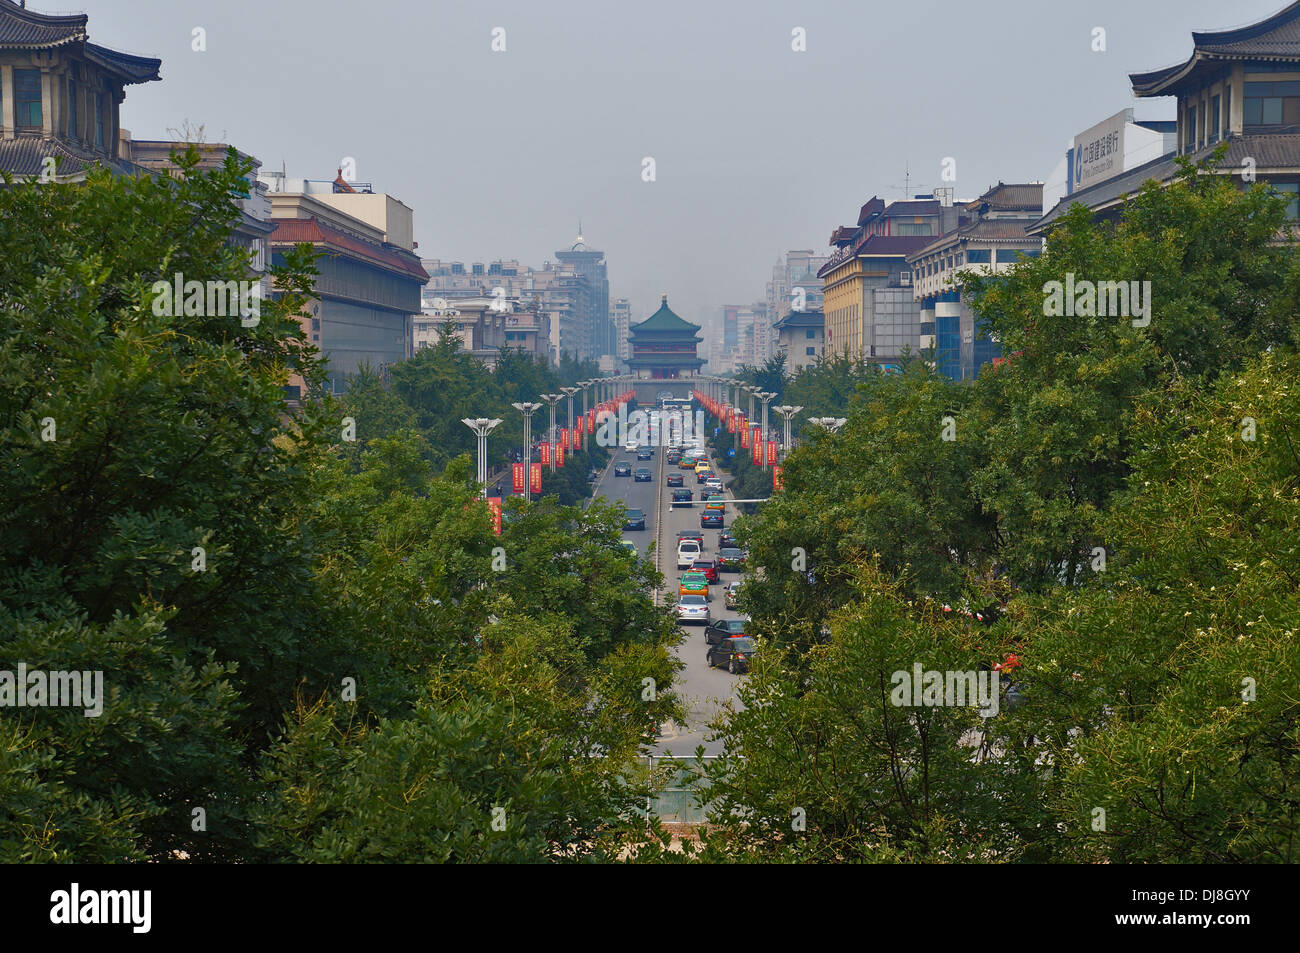 Vista de la torre del campanario de la muralla de la ciudad de Xi'an, China Foto de stock